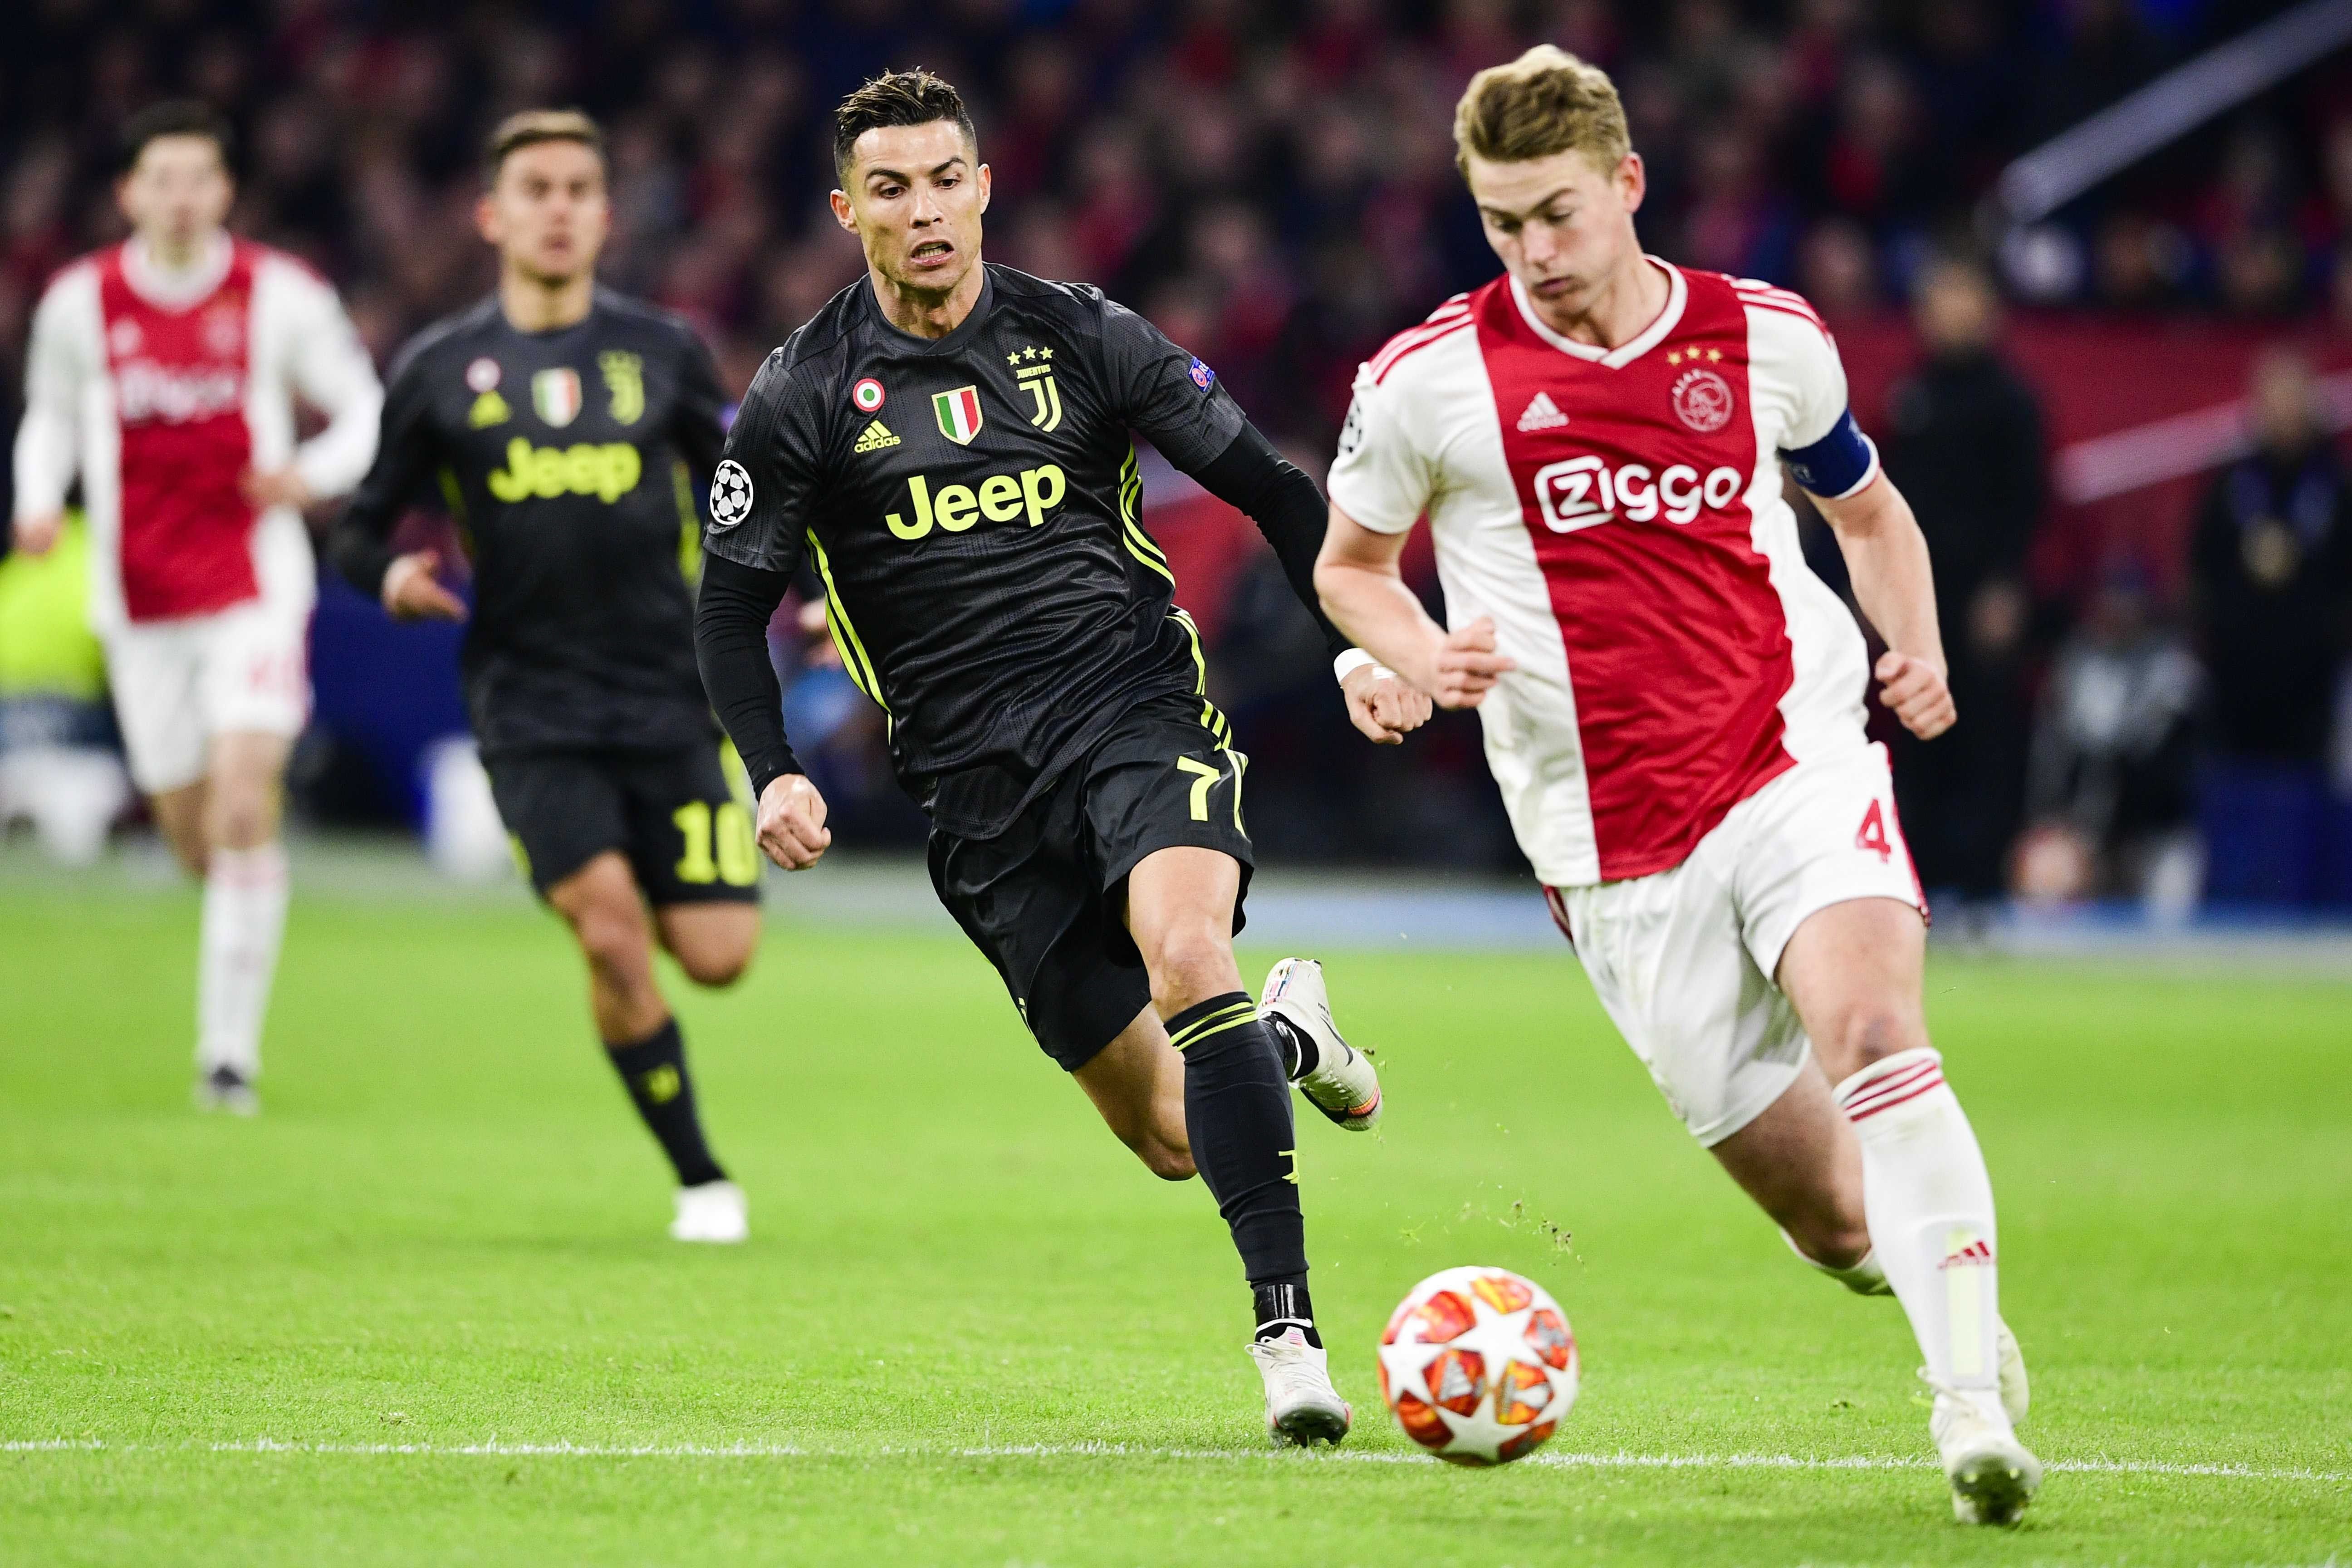 L'Ajax és millor però no passa de l'empat contra la Juventus (1-1)